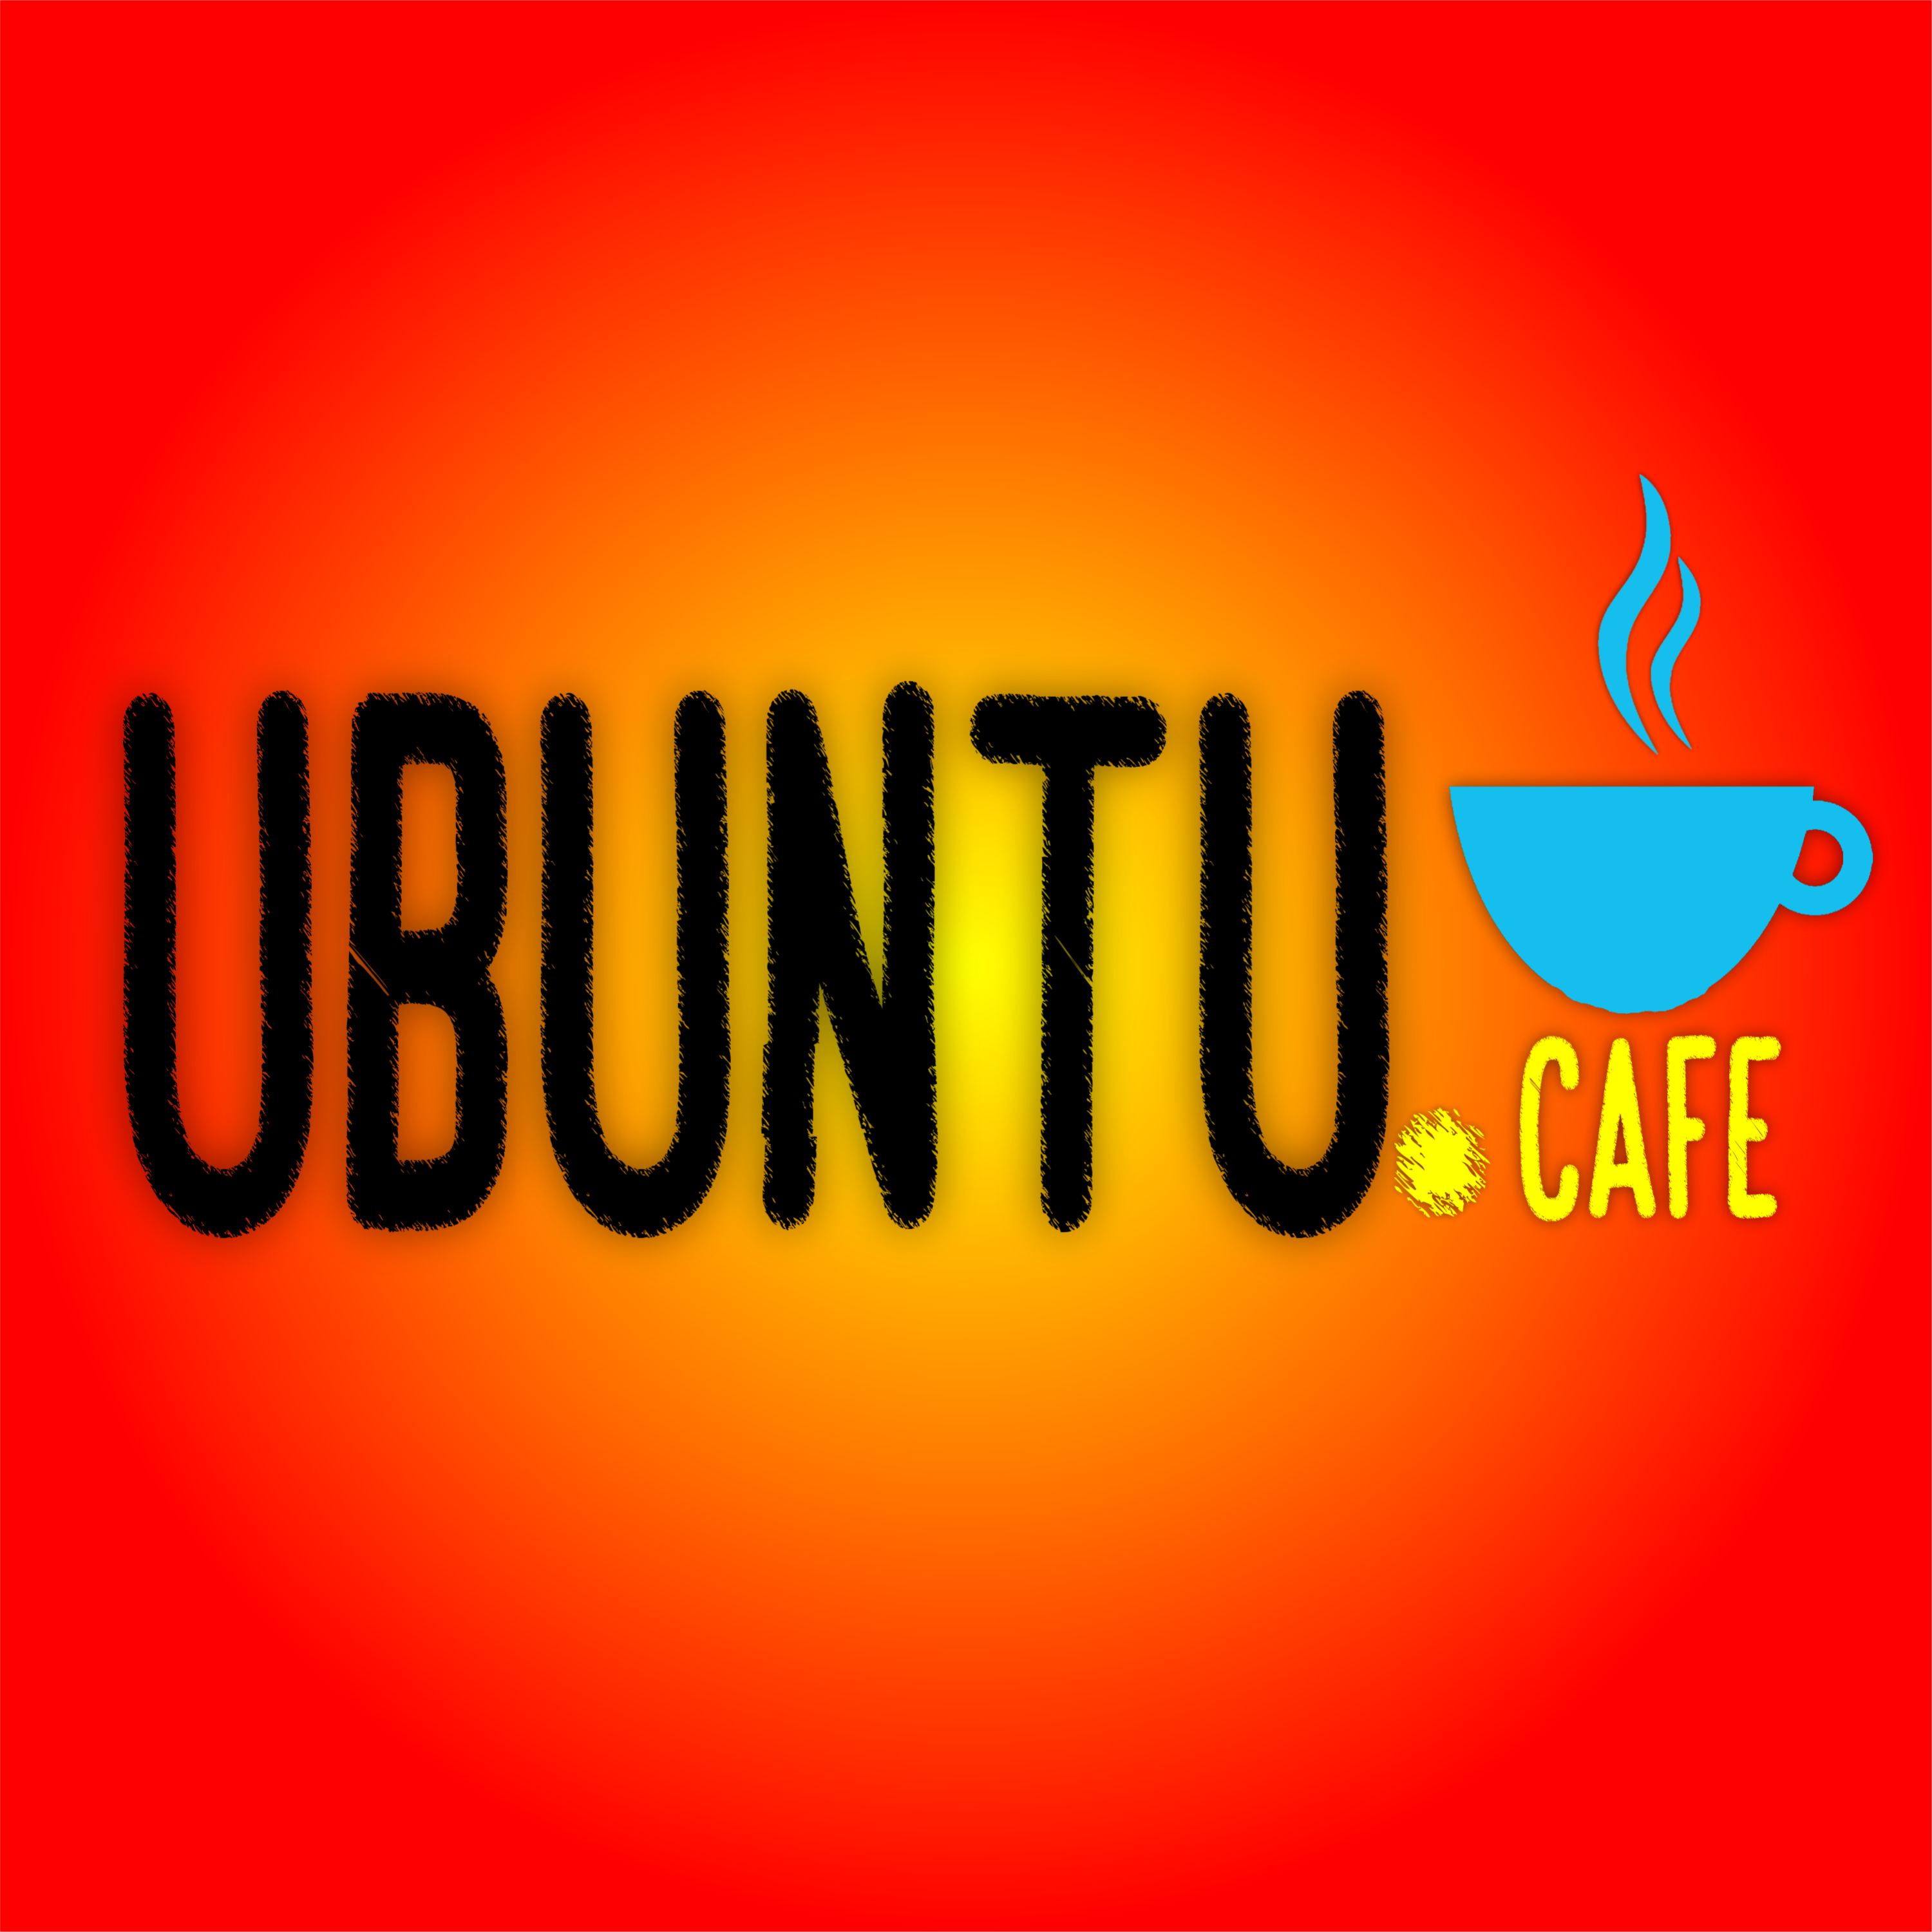 Ubuntu Cafe T2 C14 | Libros: Poemarios de Rodulfo Gonzalez II